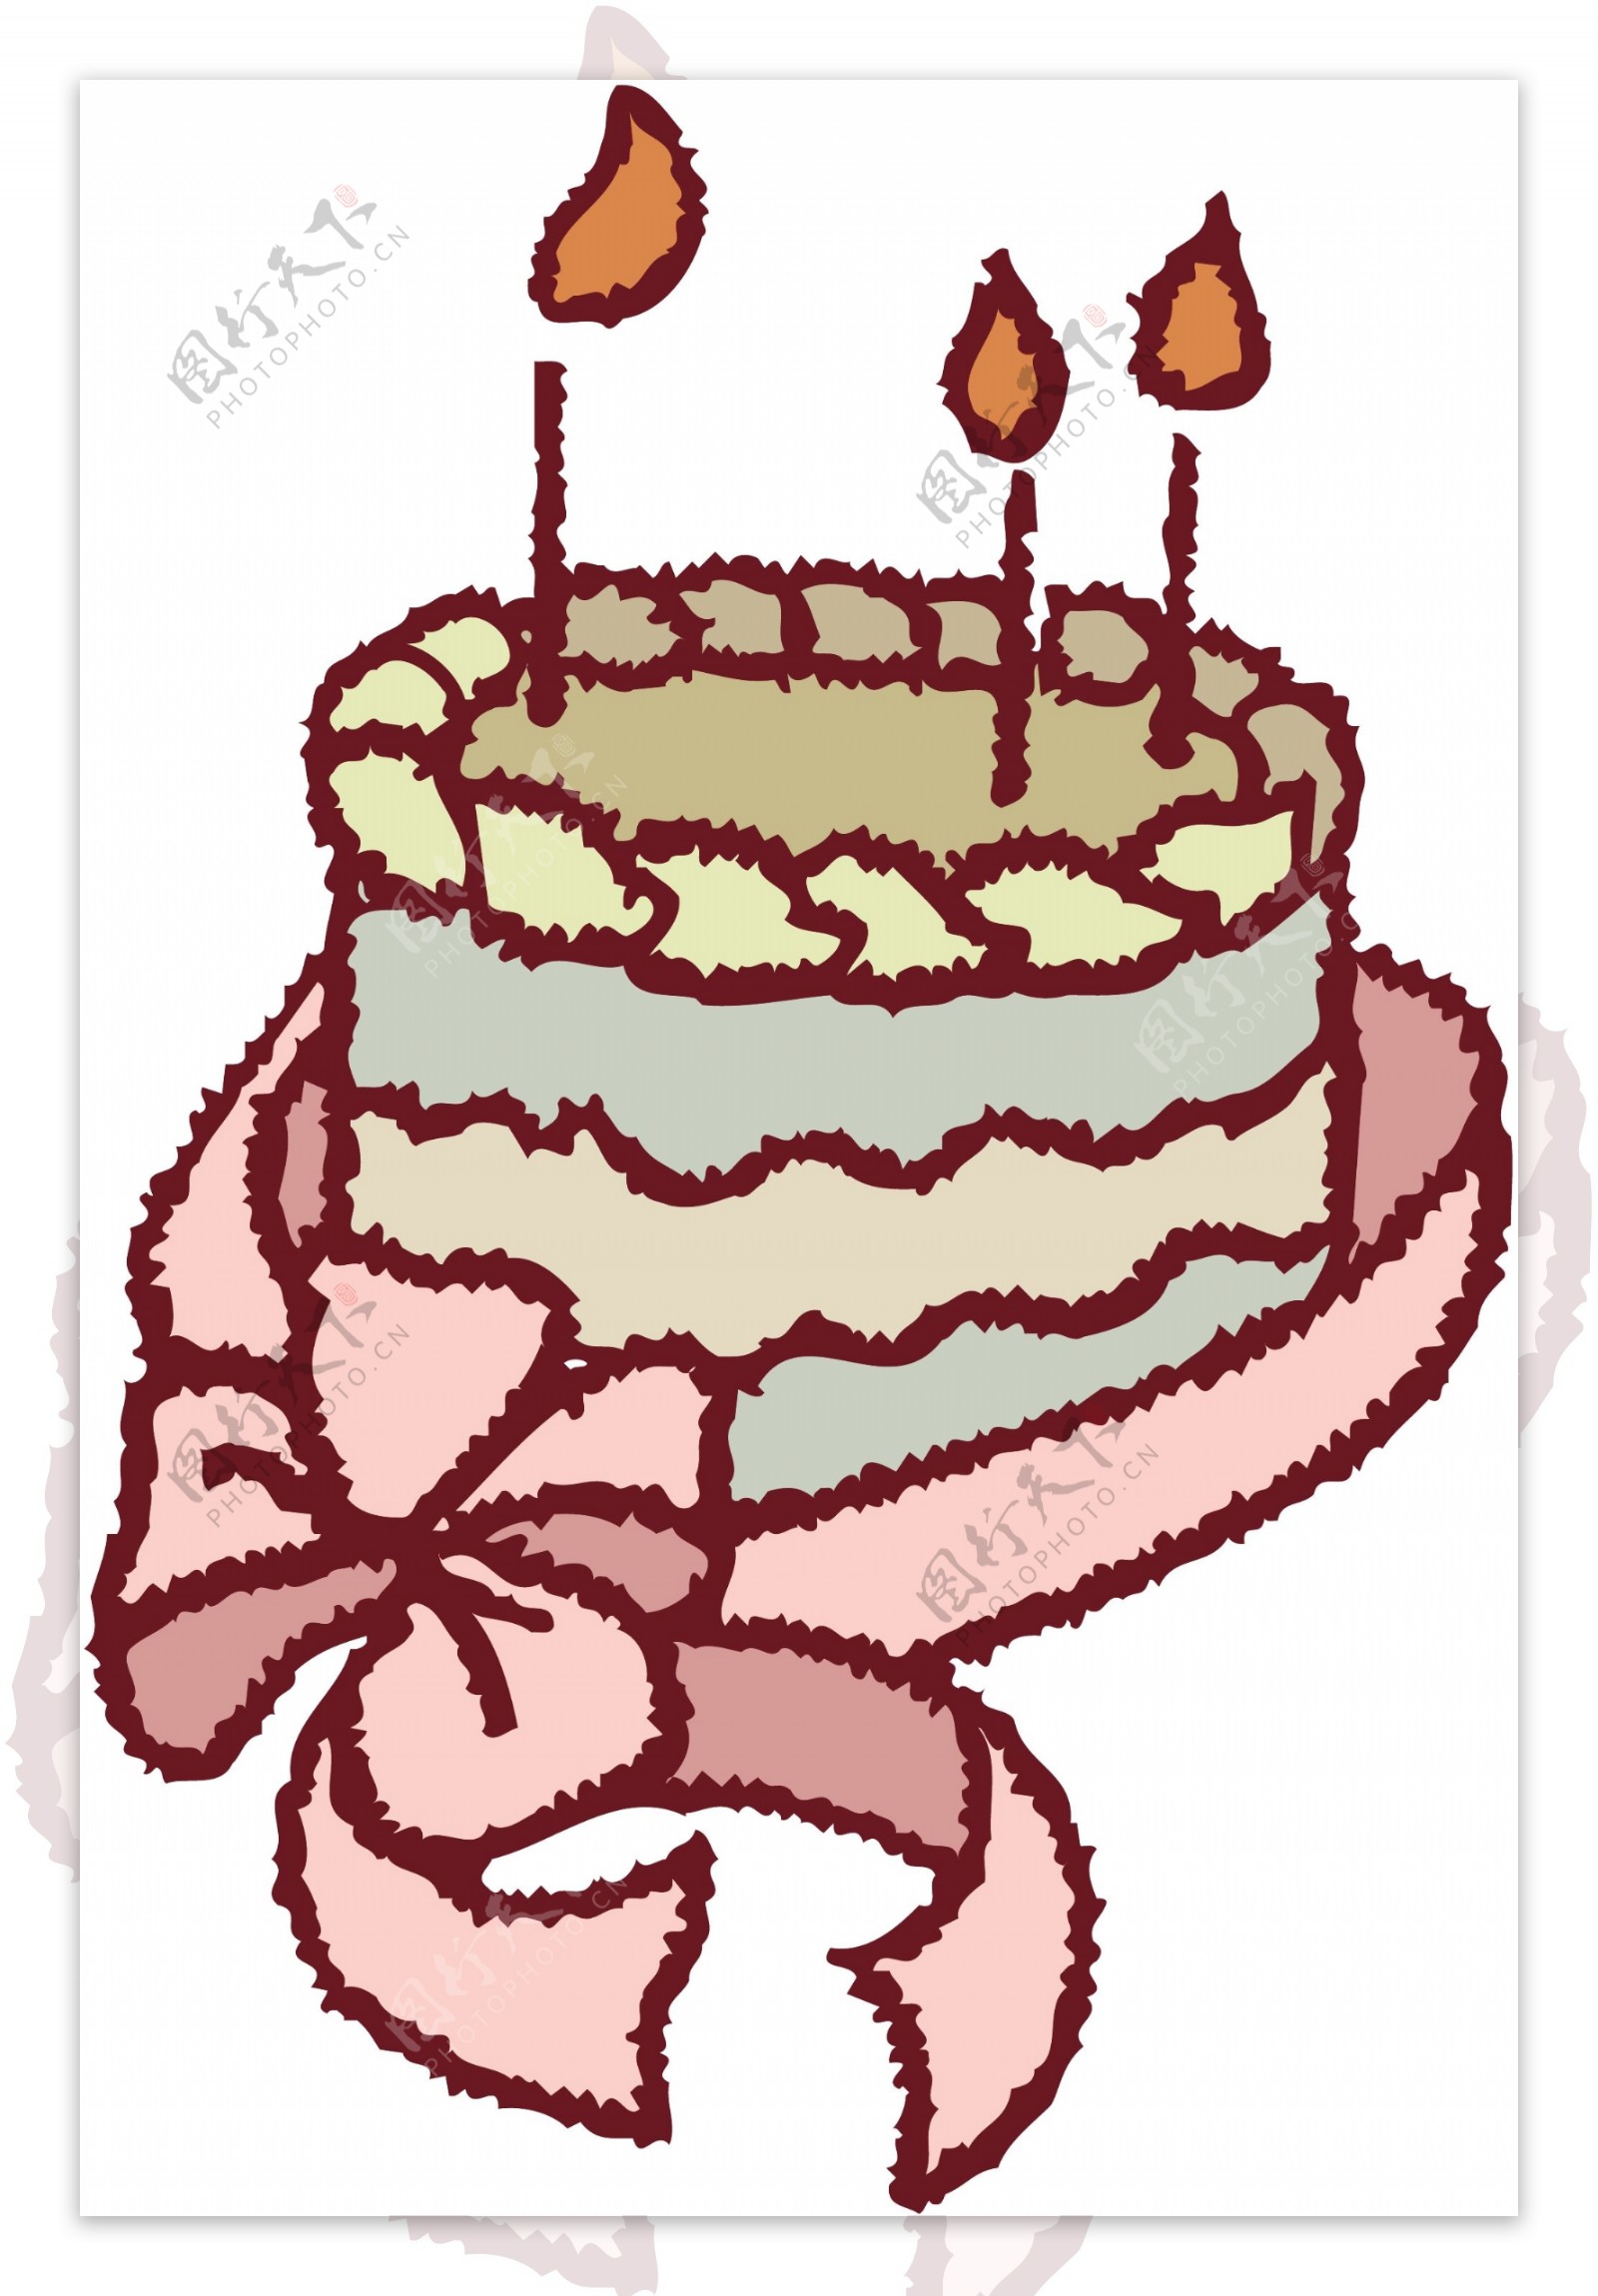 生日蛋糕插画图片